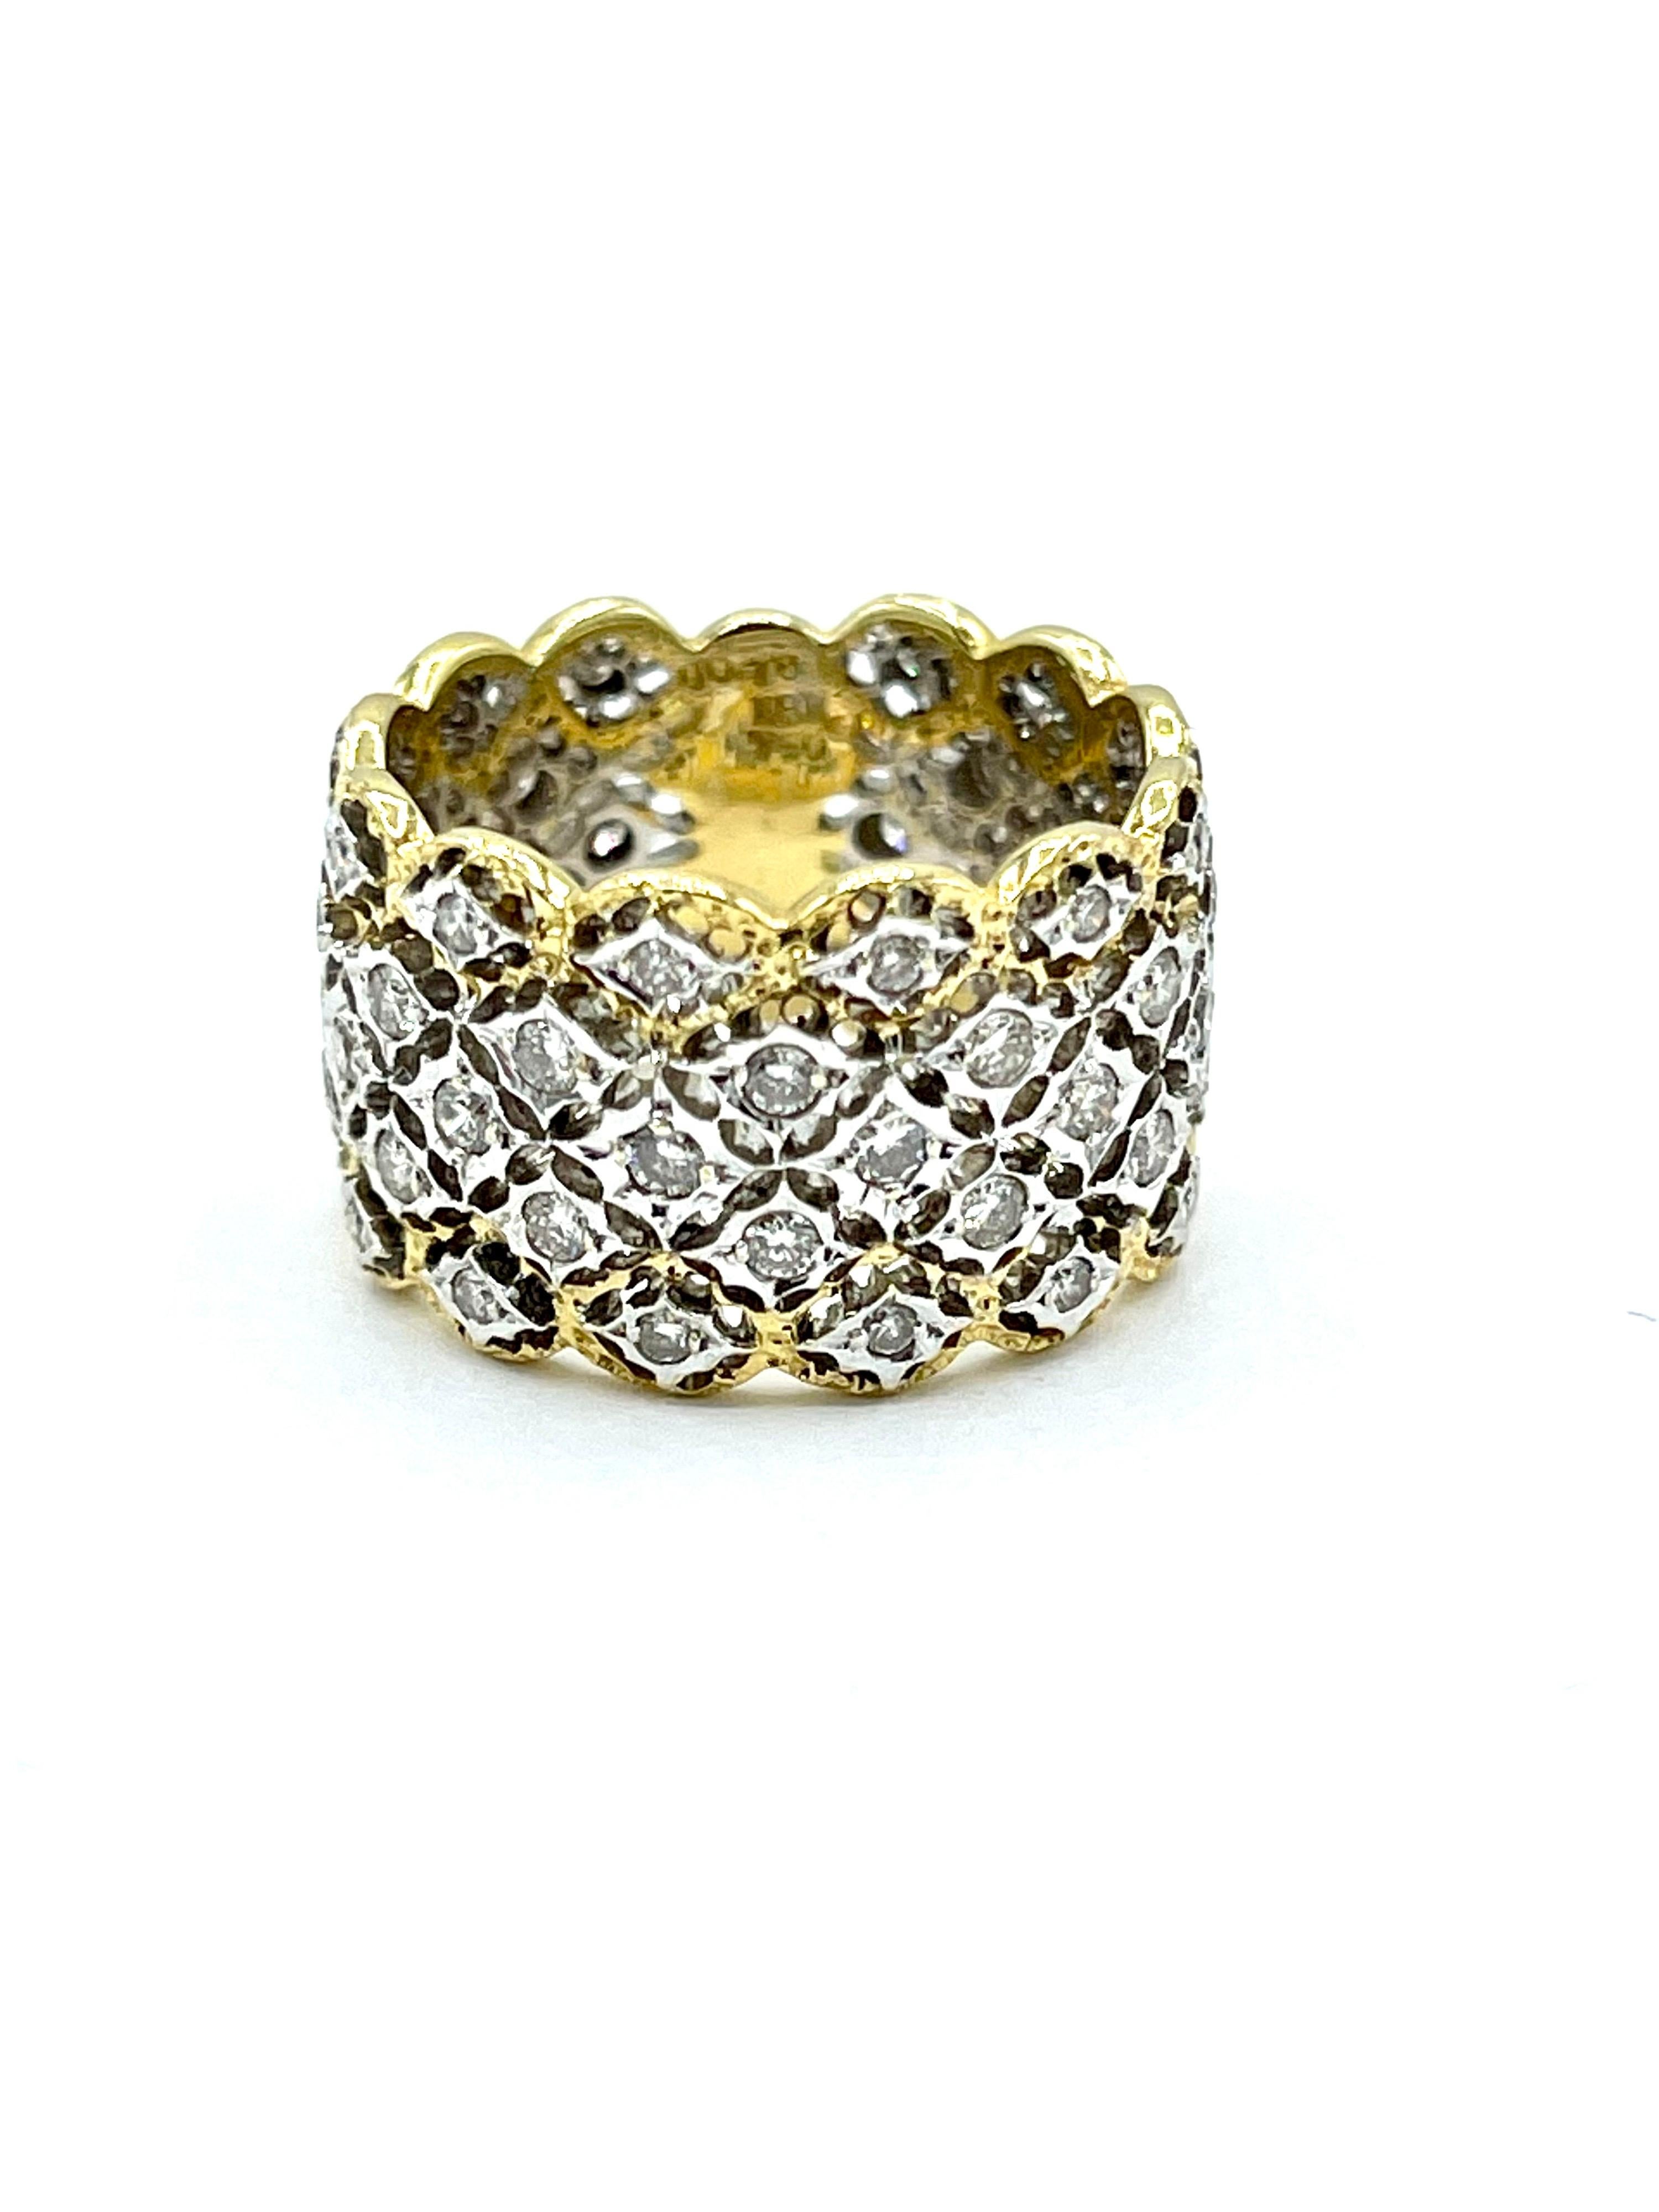 Ein schöner runder Brillantring im Stil eines Bandes.  Der Ring enthält 0,78 Karat Diamanten, die in 18 Karat Weißgold mit einer 18 Karat Gelbgoldeinfassung gefasst sind.  Die Diamanten sind G-H Farbe, VS2 Klarheit eingestuft.  Der innere Boden des